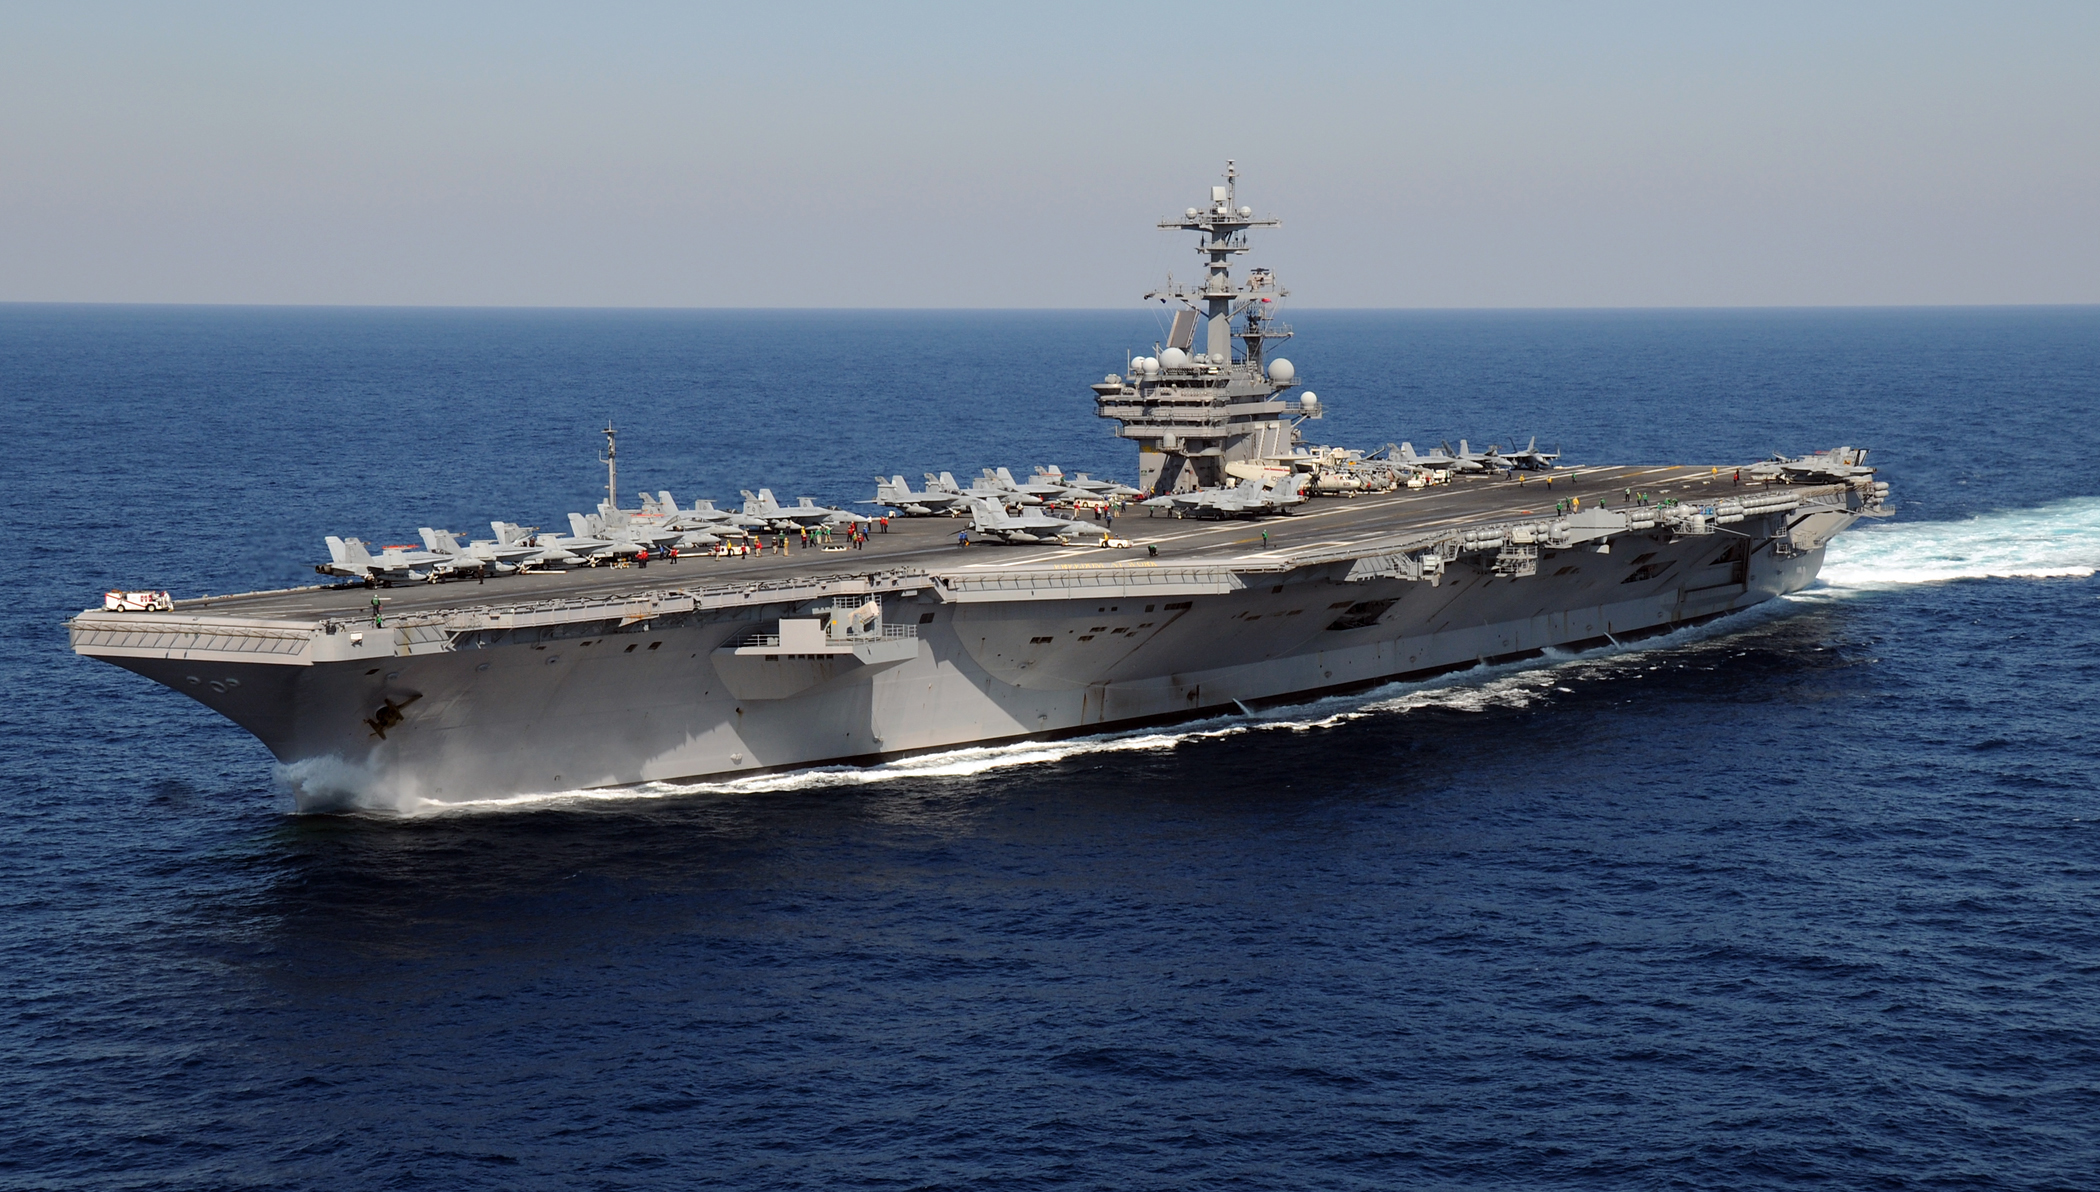 US_Navy_110129-N-3885H-158_USS_George_H.W._Bush_(CVN_77)_is_underway_in_the_Atlantic_Ocean.jpg